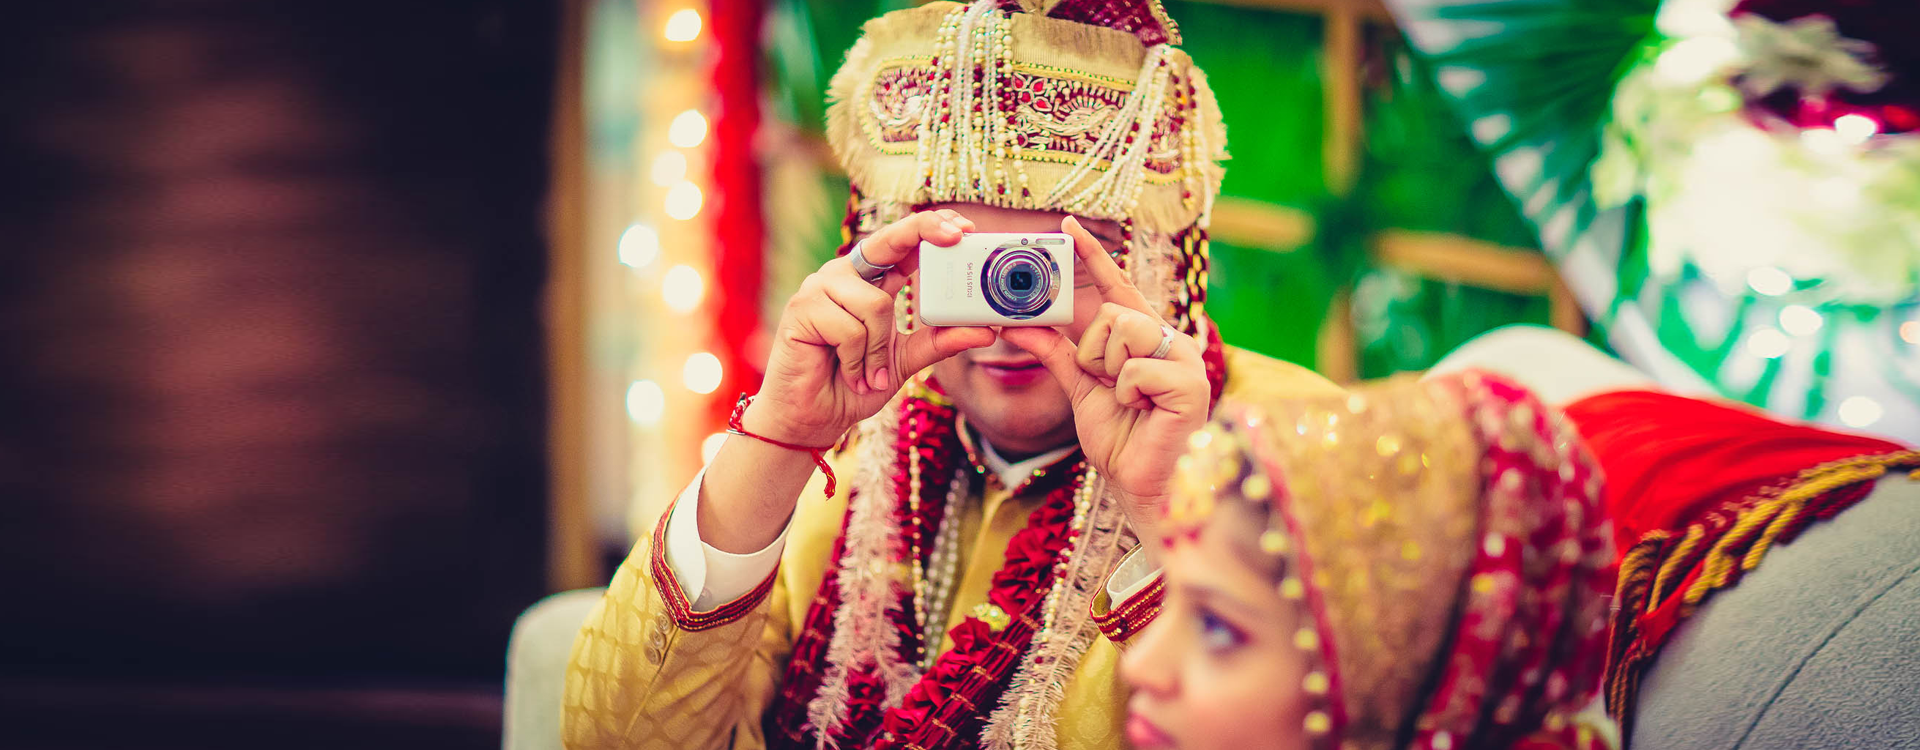 Photoshoot Of Wedding Hyderabad